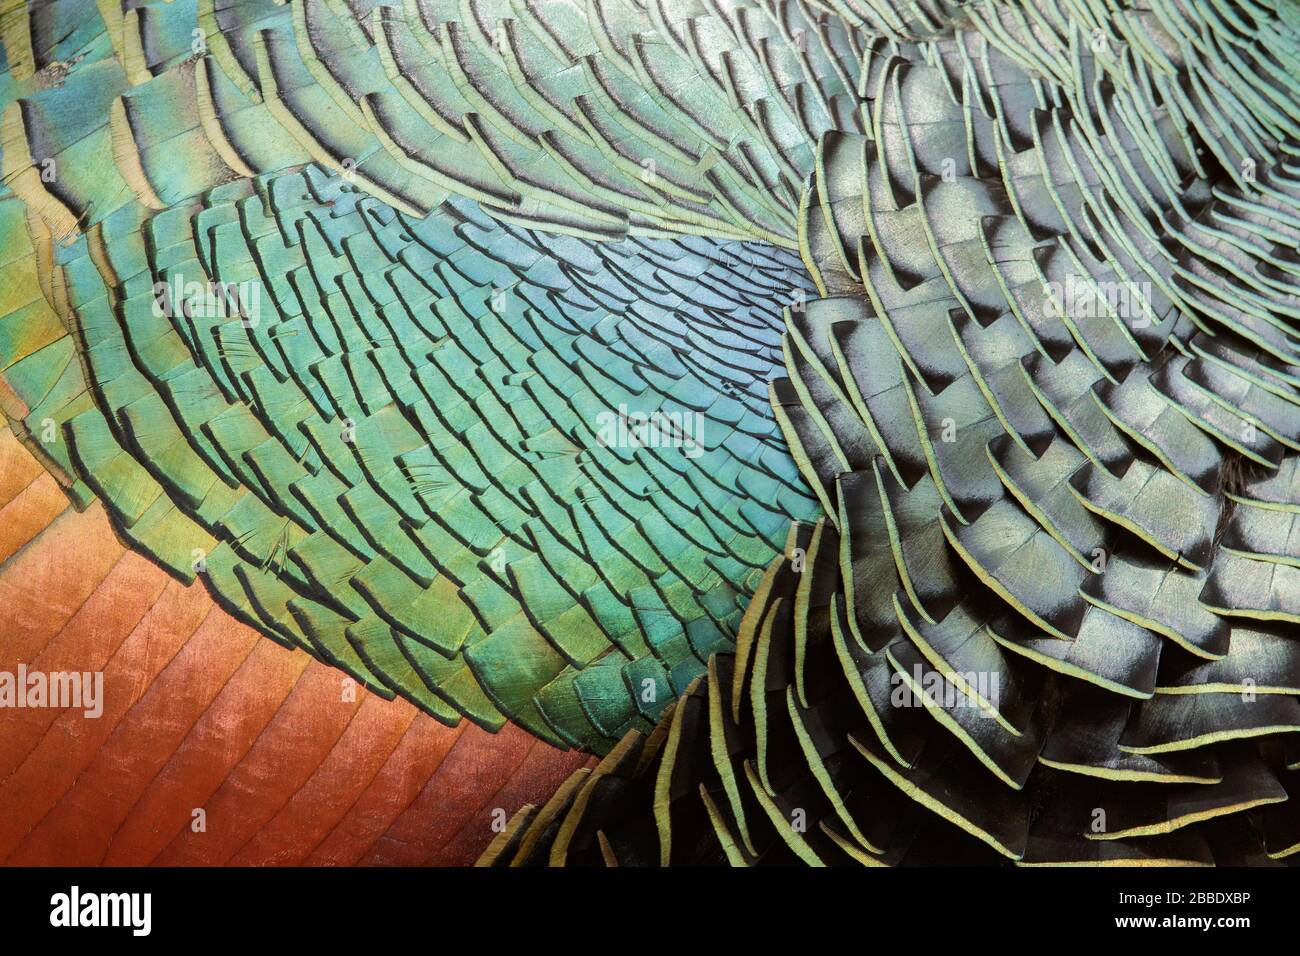 Turquie ocellata (Meleagris ocellata) perchée sur le terrain au Guatemala en Amérique centrale Banque D'Images